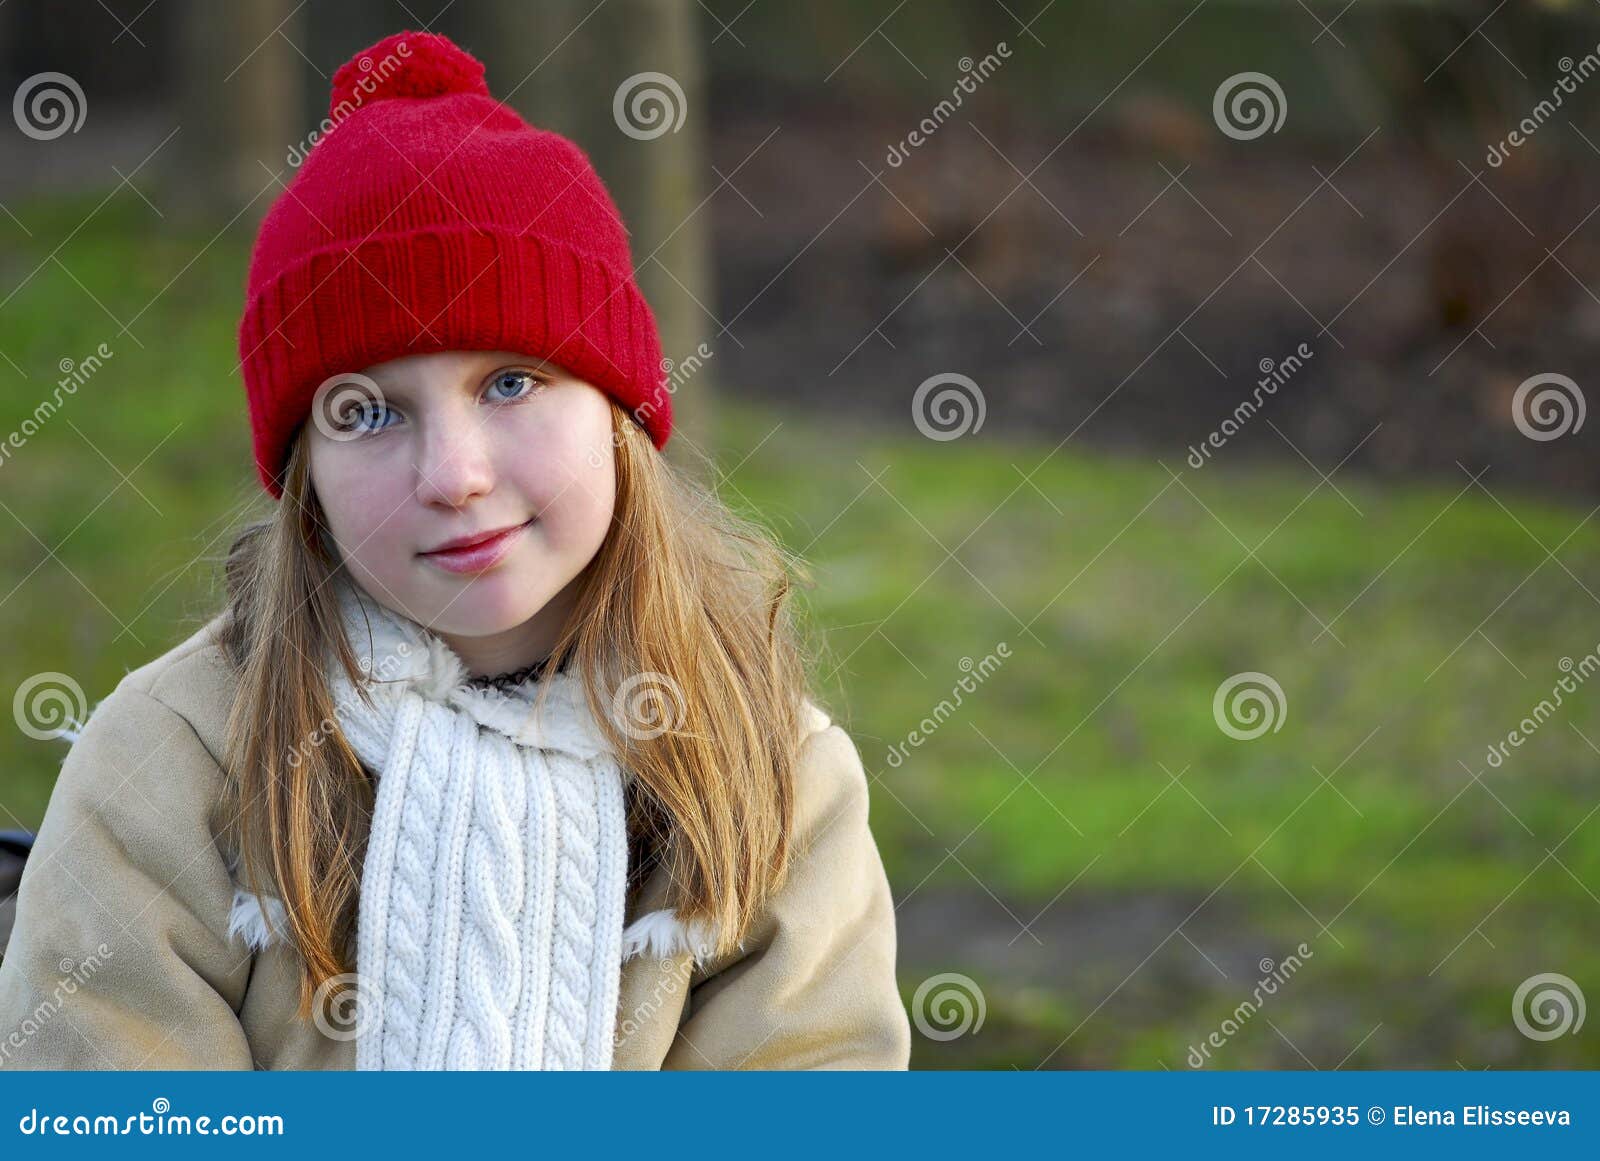 Meisje in de winterkleren stock afbeelding. Image of mensen - 17285935